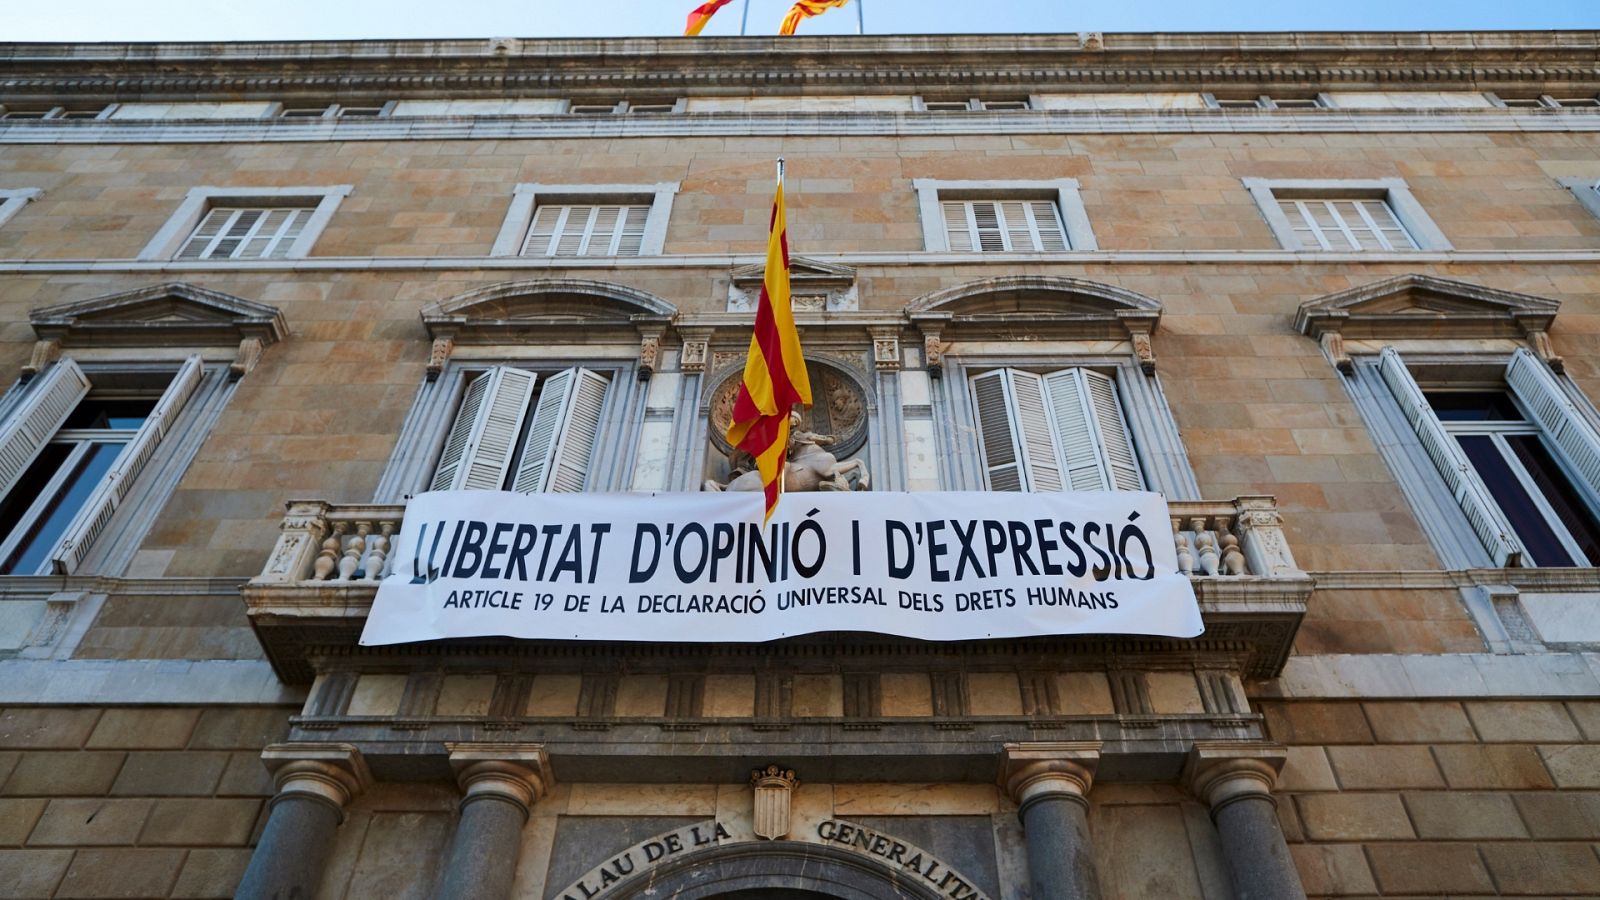 El presidente de la Generalitat, Quim Torra, ha vuelto a desafiar a la Junta Electoral Central (JEC) este viernes. Después de haber retirado los símbolos independentistas, ha colocado una nueva pancarta por la libertad de expresión en la fachada de l